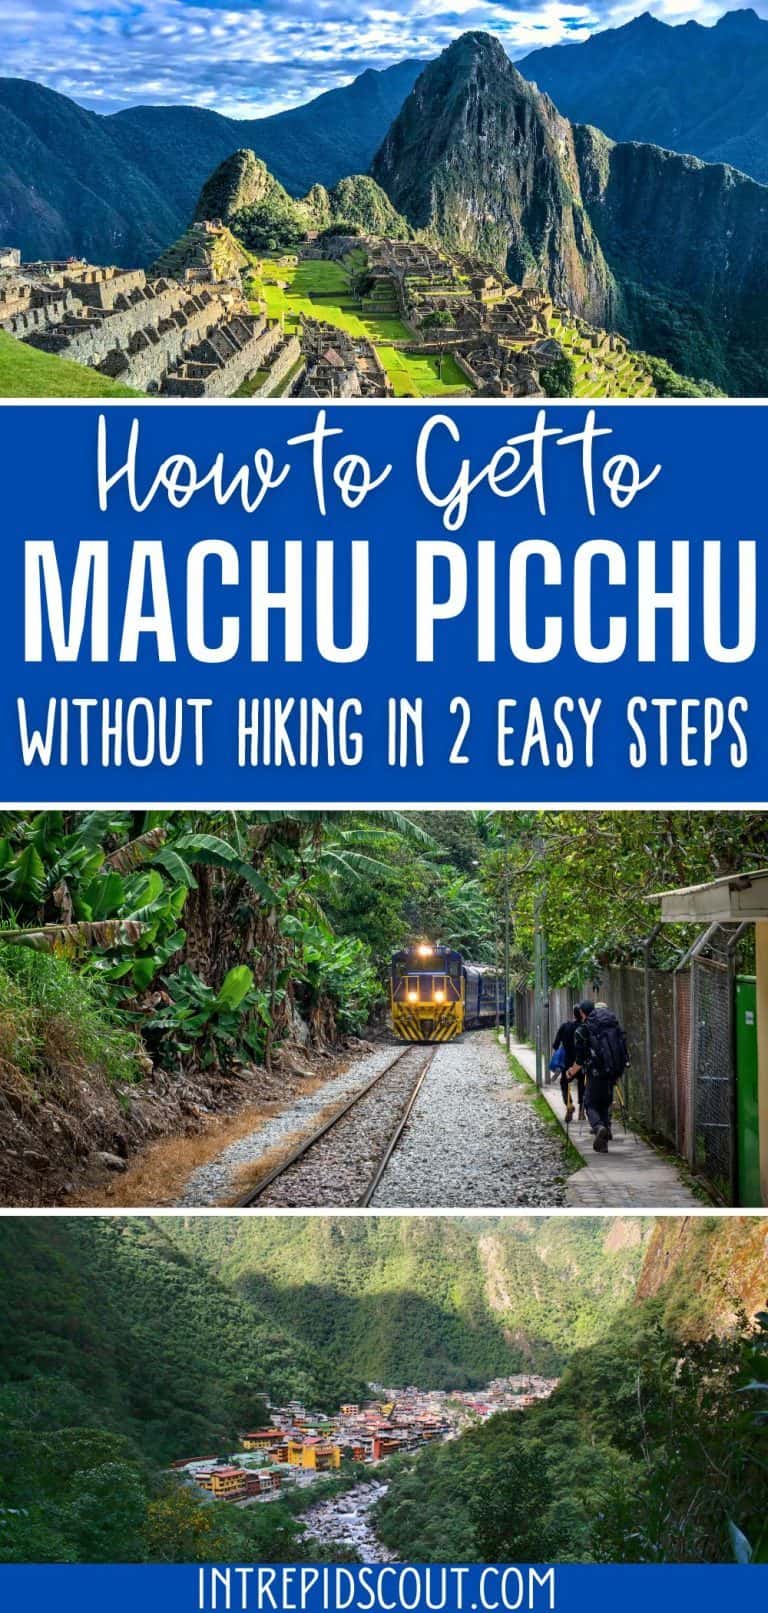 visit machu picchu without hiking